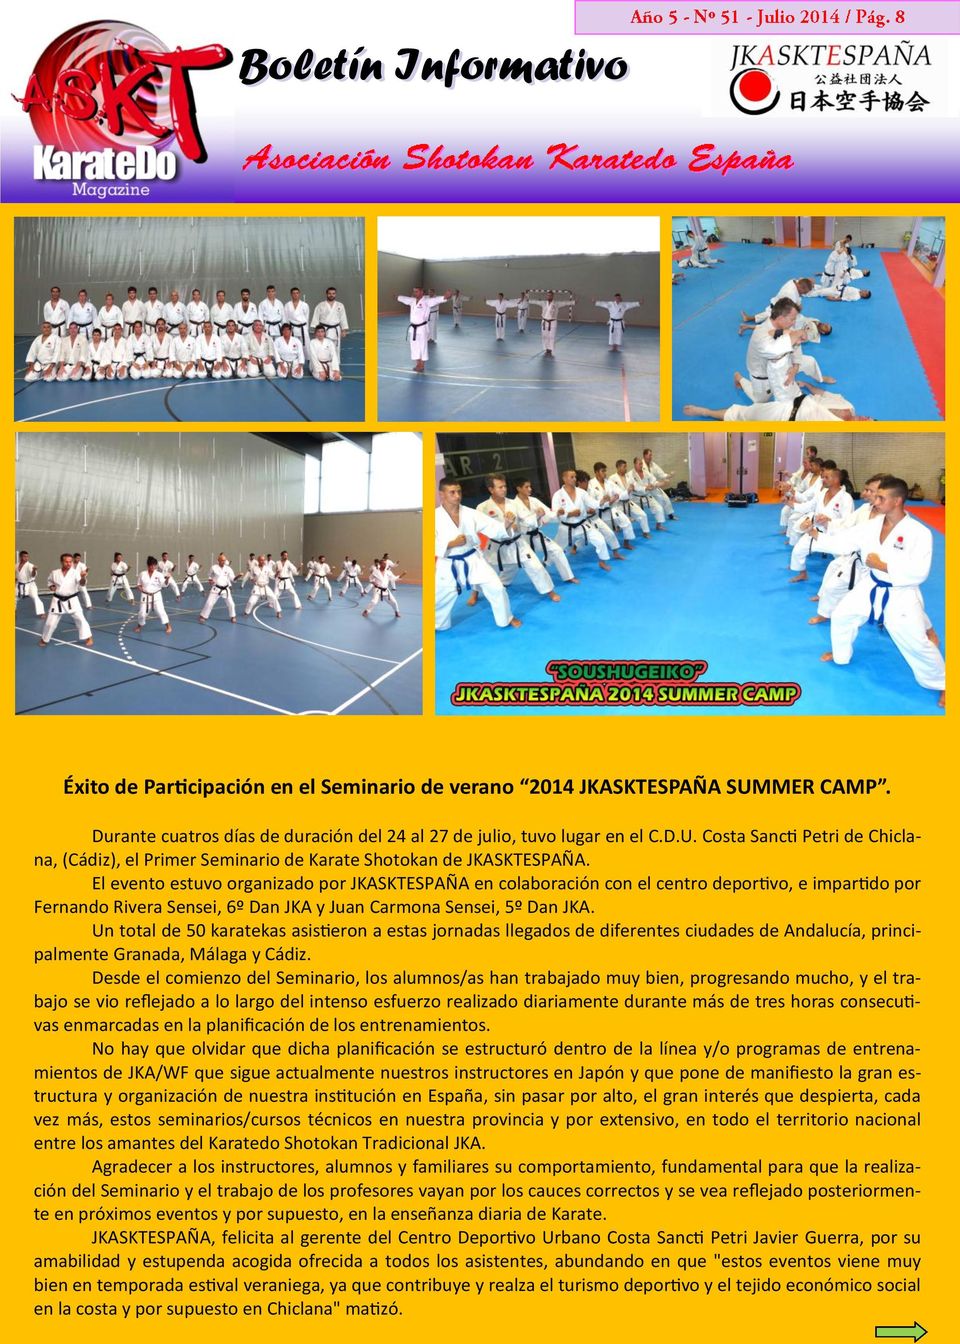 Un total de 50 karatekas asistieron a estas jornadas llegados de diferentes ciudades de Andalucía, principalmente Granada, Málaga y Cádiz.